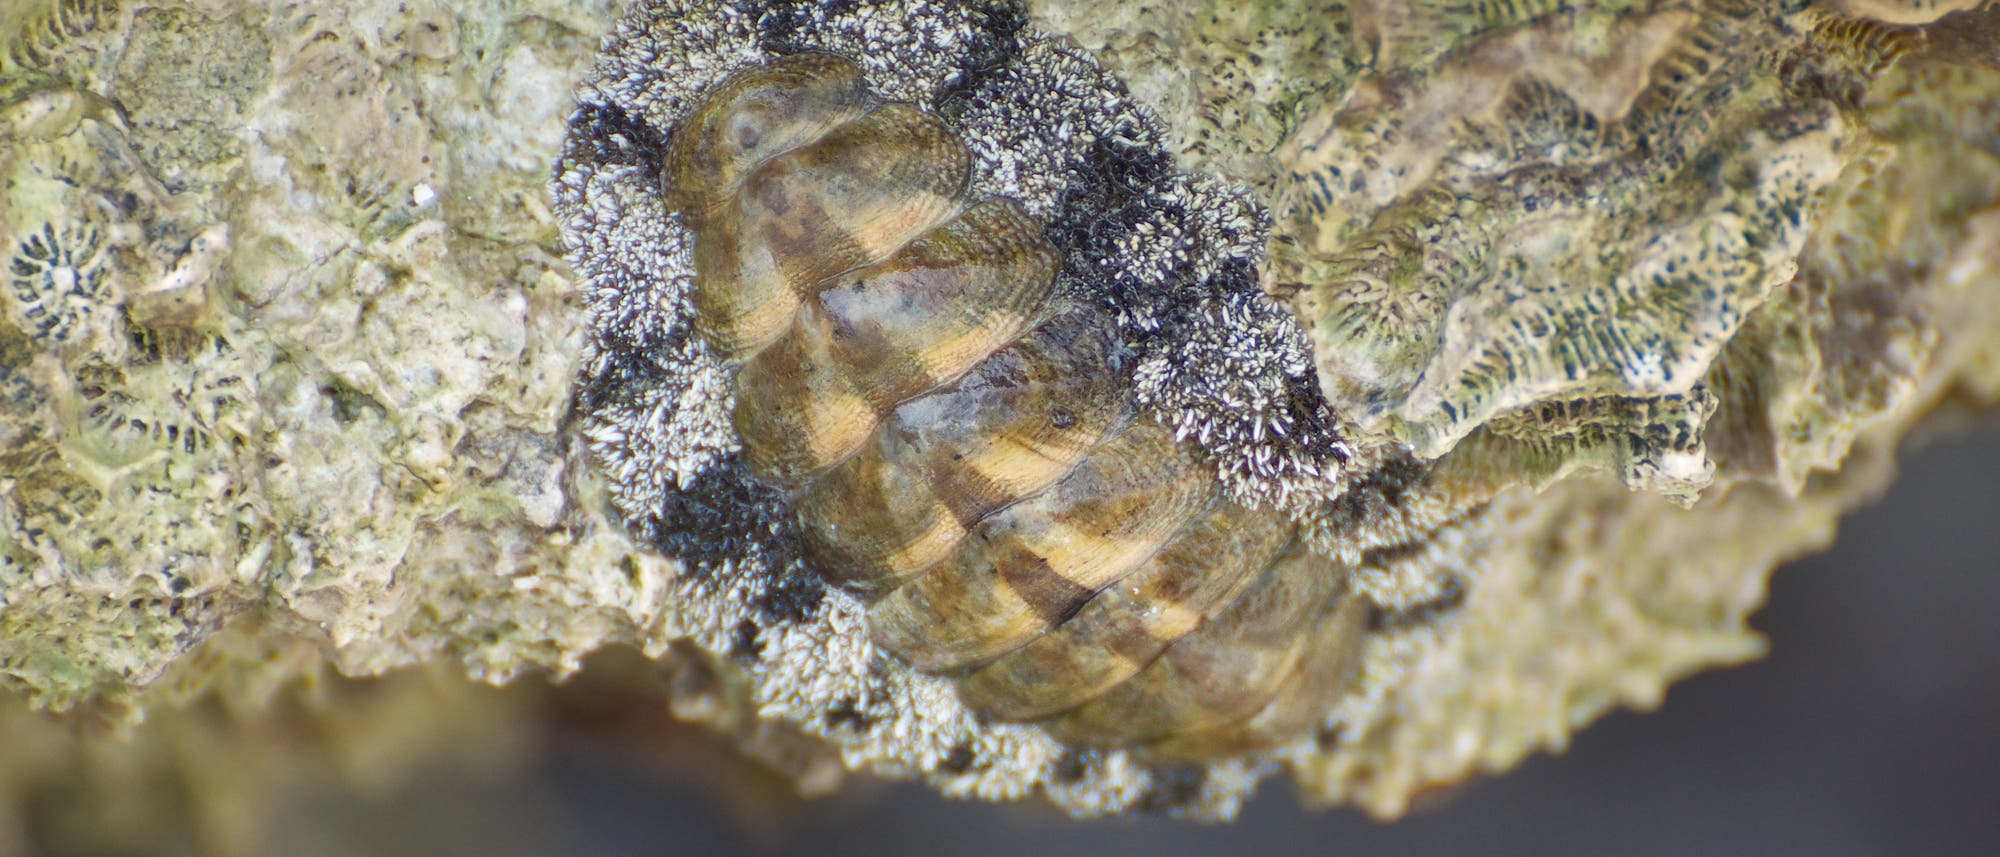 Tropische Käferschnecke, Acanthopleura granulata